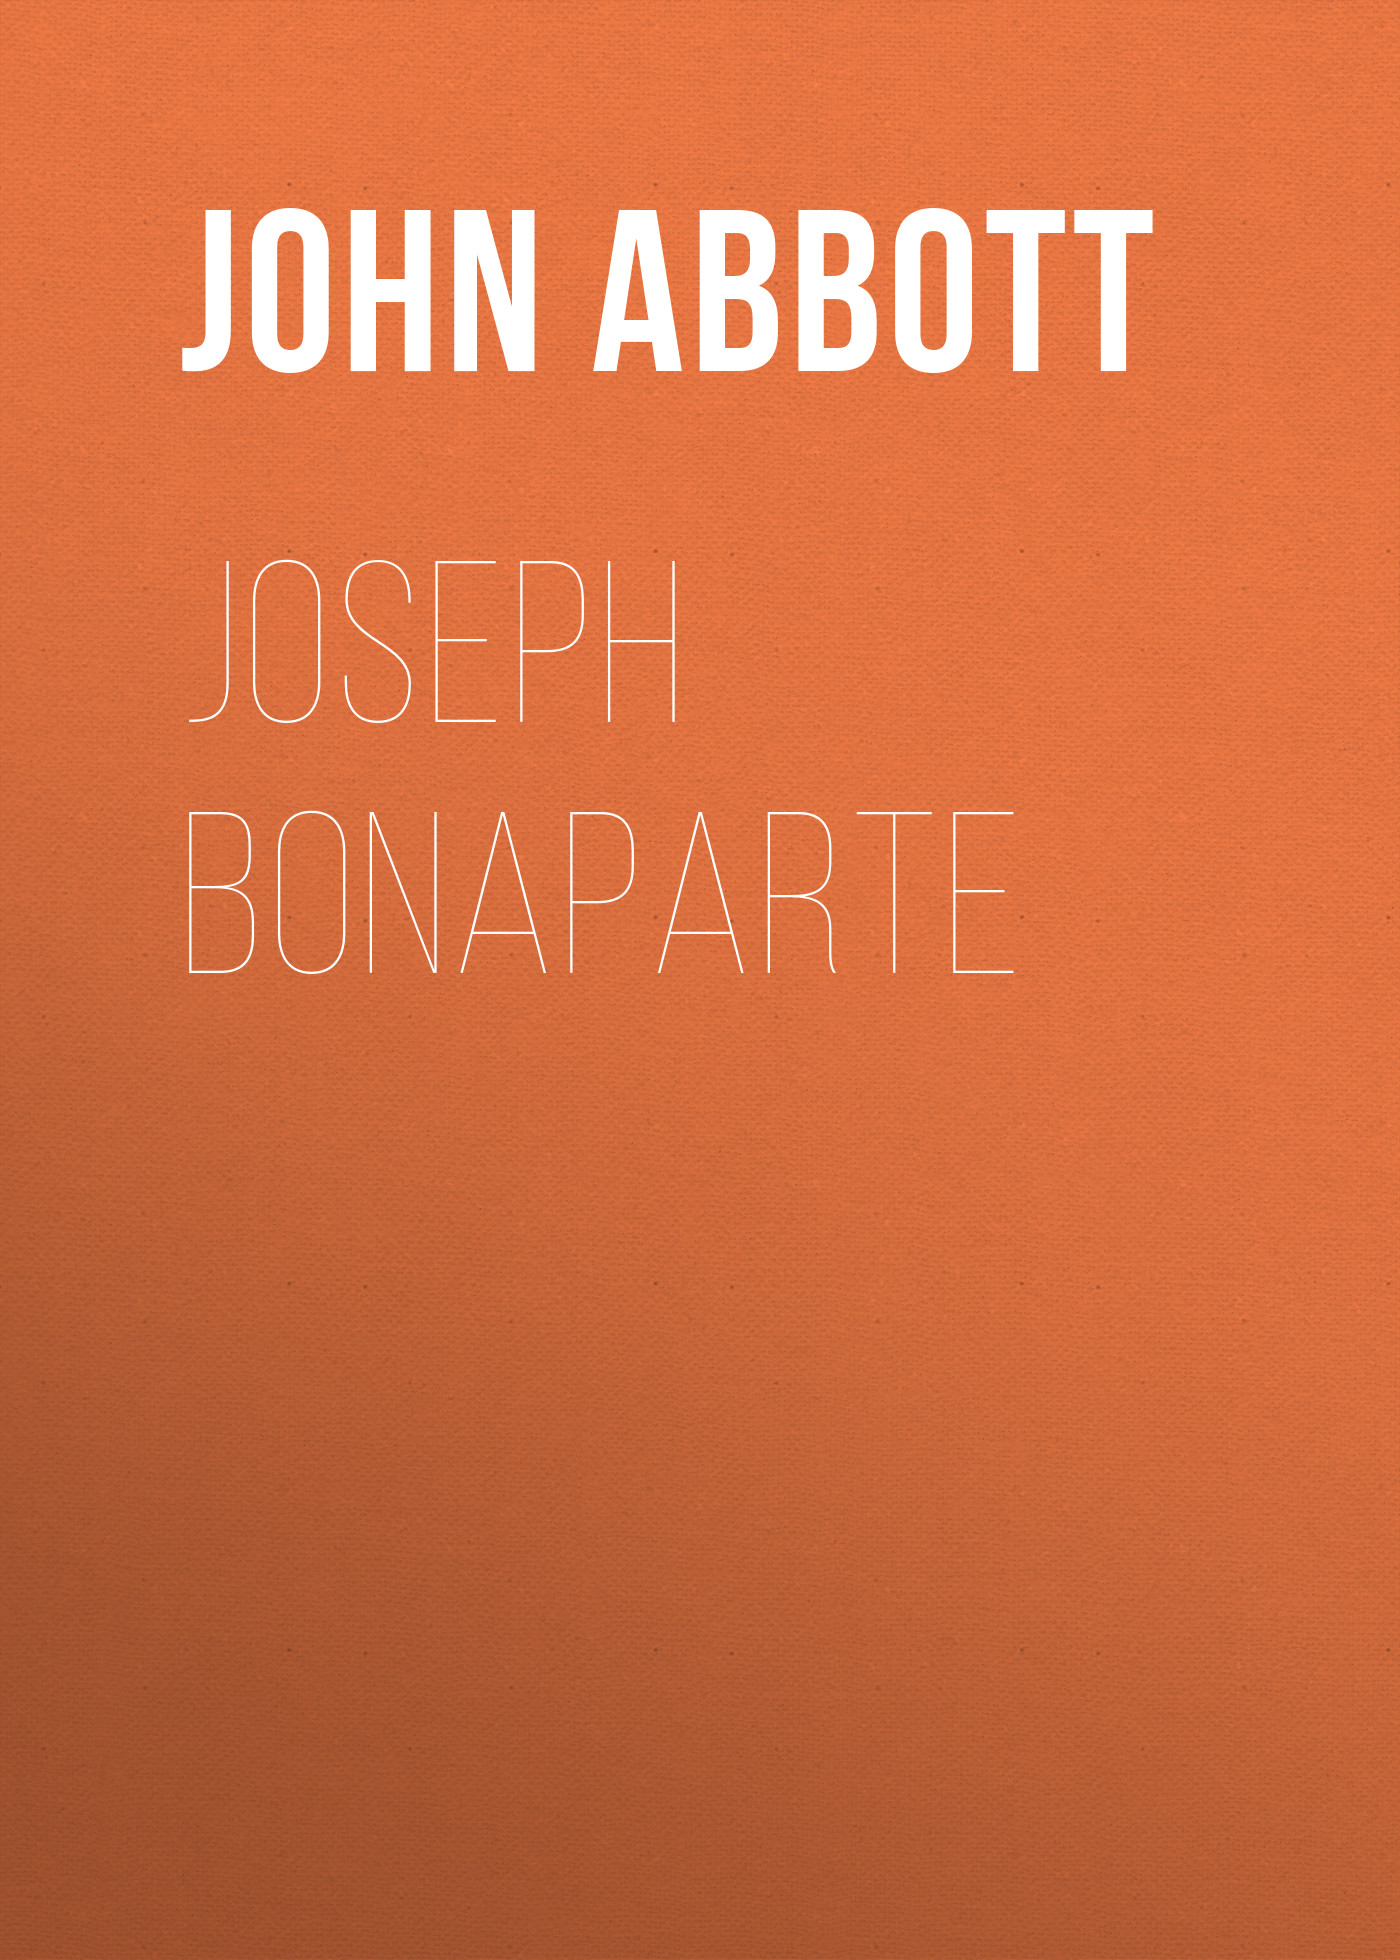 Книга Joseph Bonaparte из серии , созданная John Abbott, может относится к жанру Зарубежная старинная литература, Зарубежная классика, Историческая литература. Стоимость электронной книги Joseph Bonaparte с идентификатором 24173276 составляет 5.99 руб.